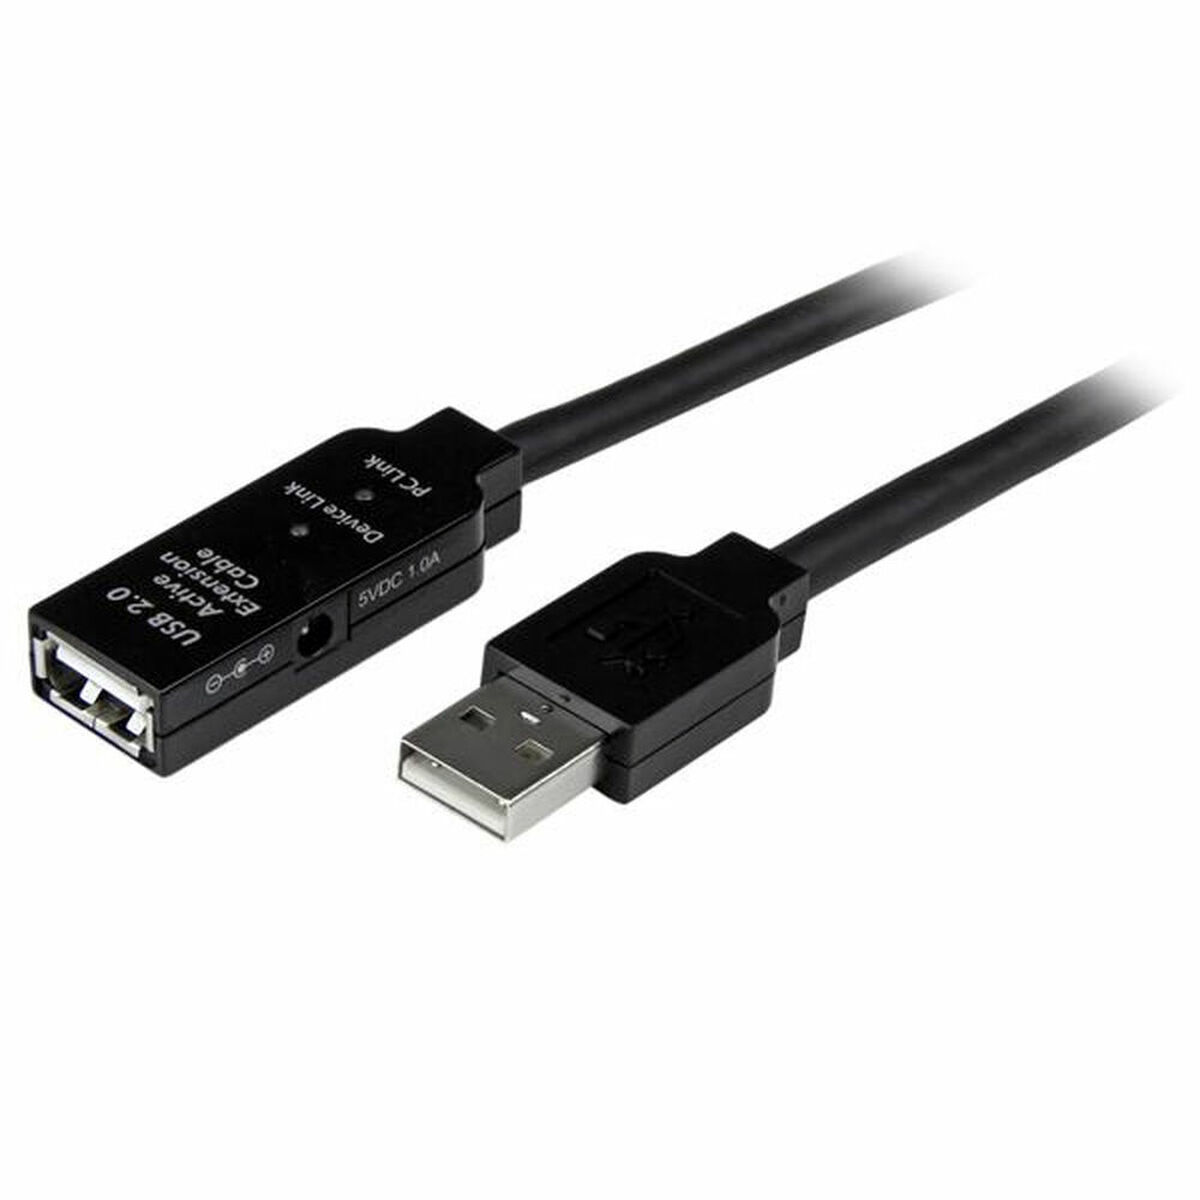 USB Extension Cable Startech USB2AAEXT20M         20 m Black